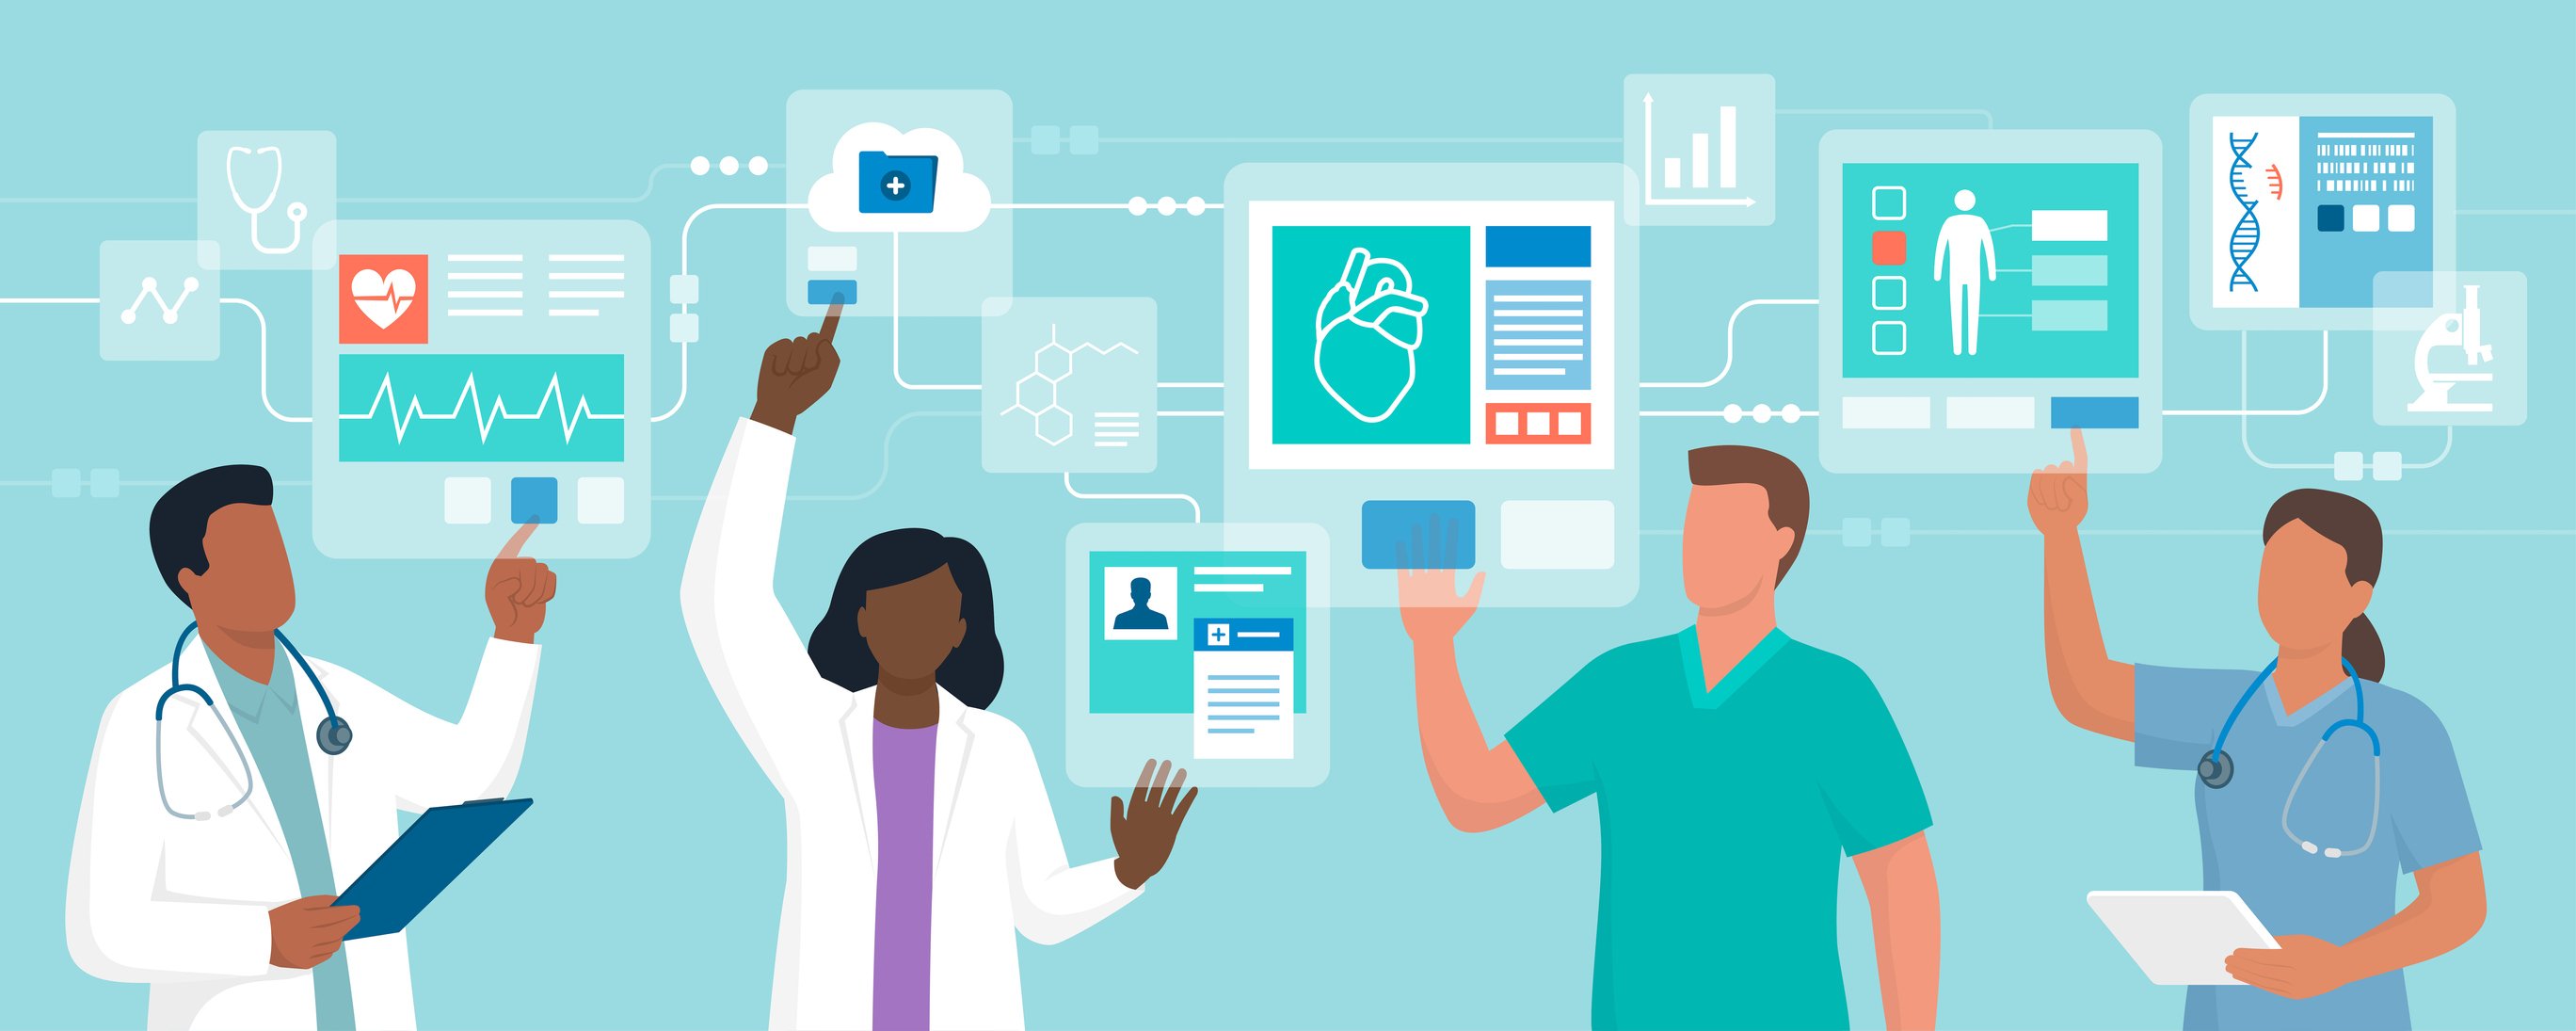 Illustration von Ärzten, die auf eine digitale Patientenakte zugreifen